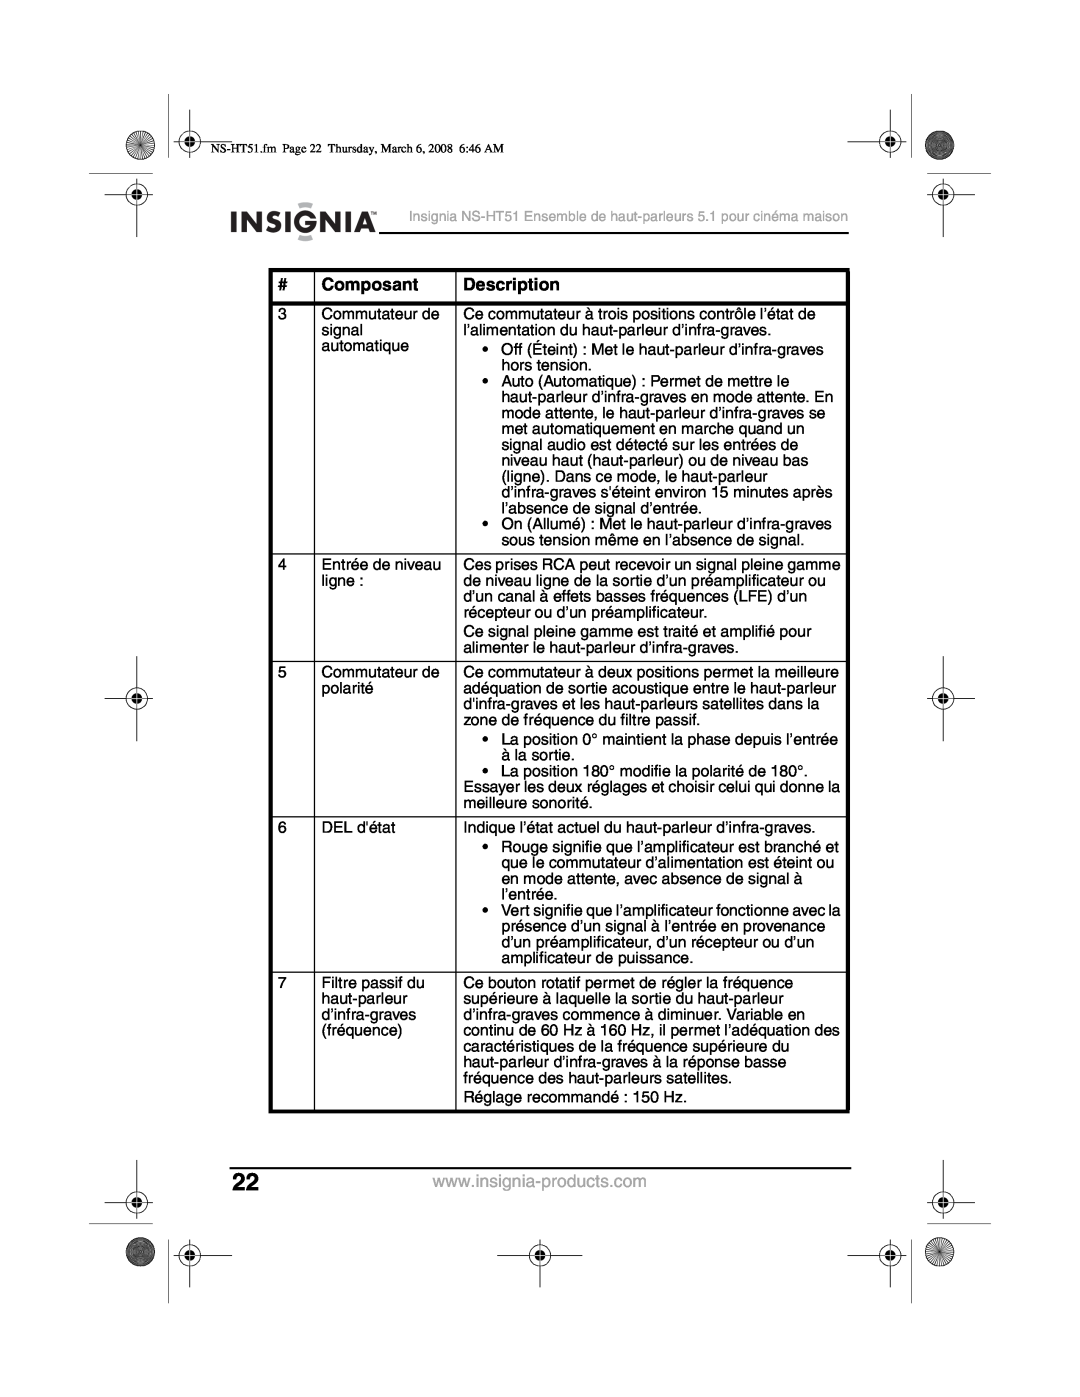 Insignia NS-HT51 manual Composant, Description 